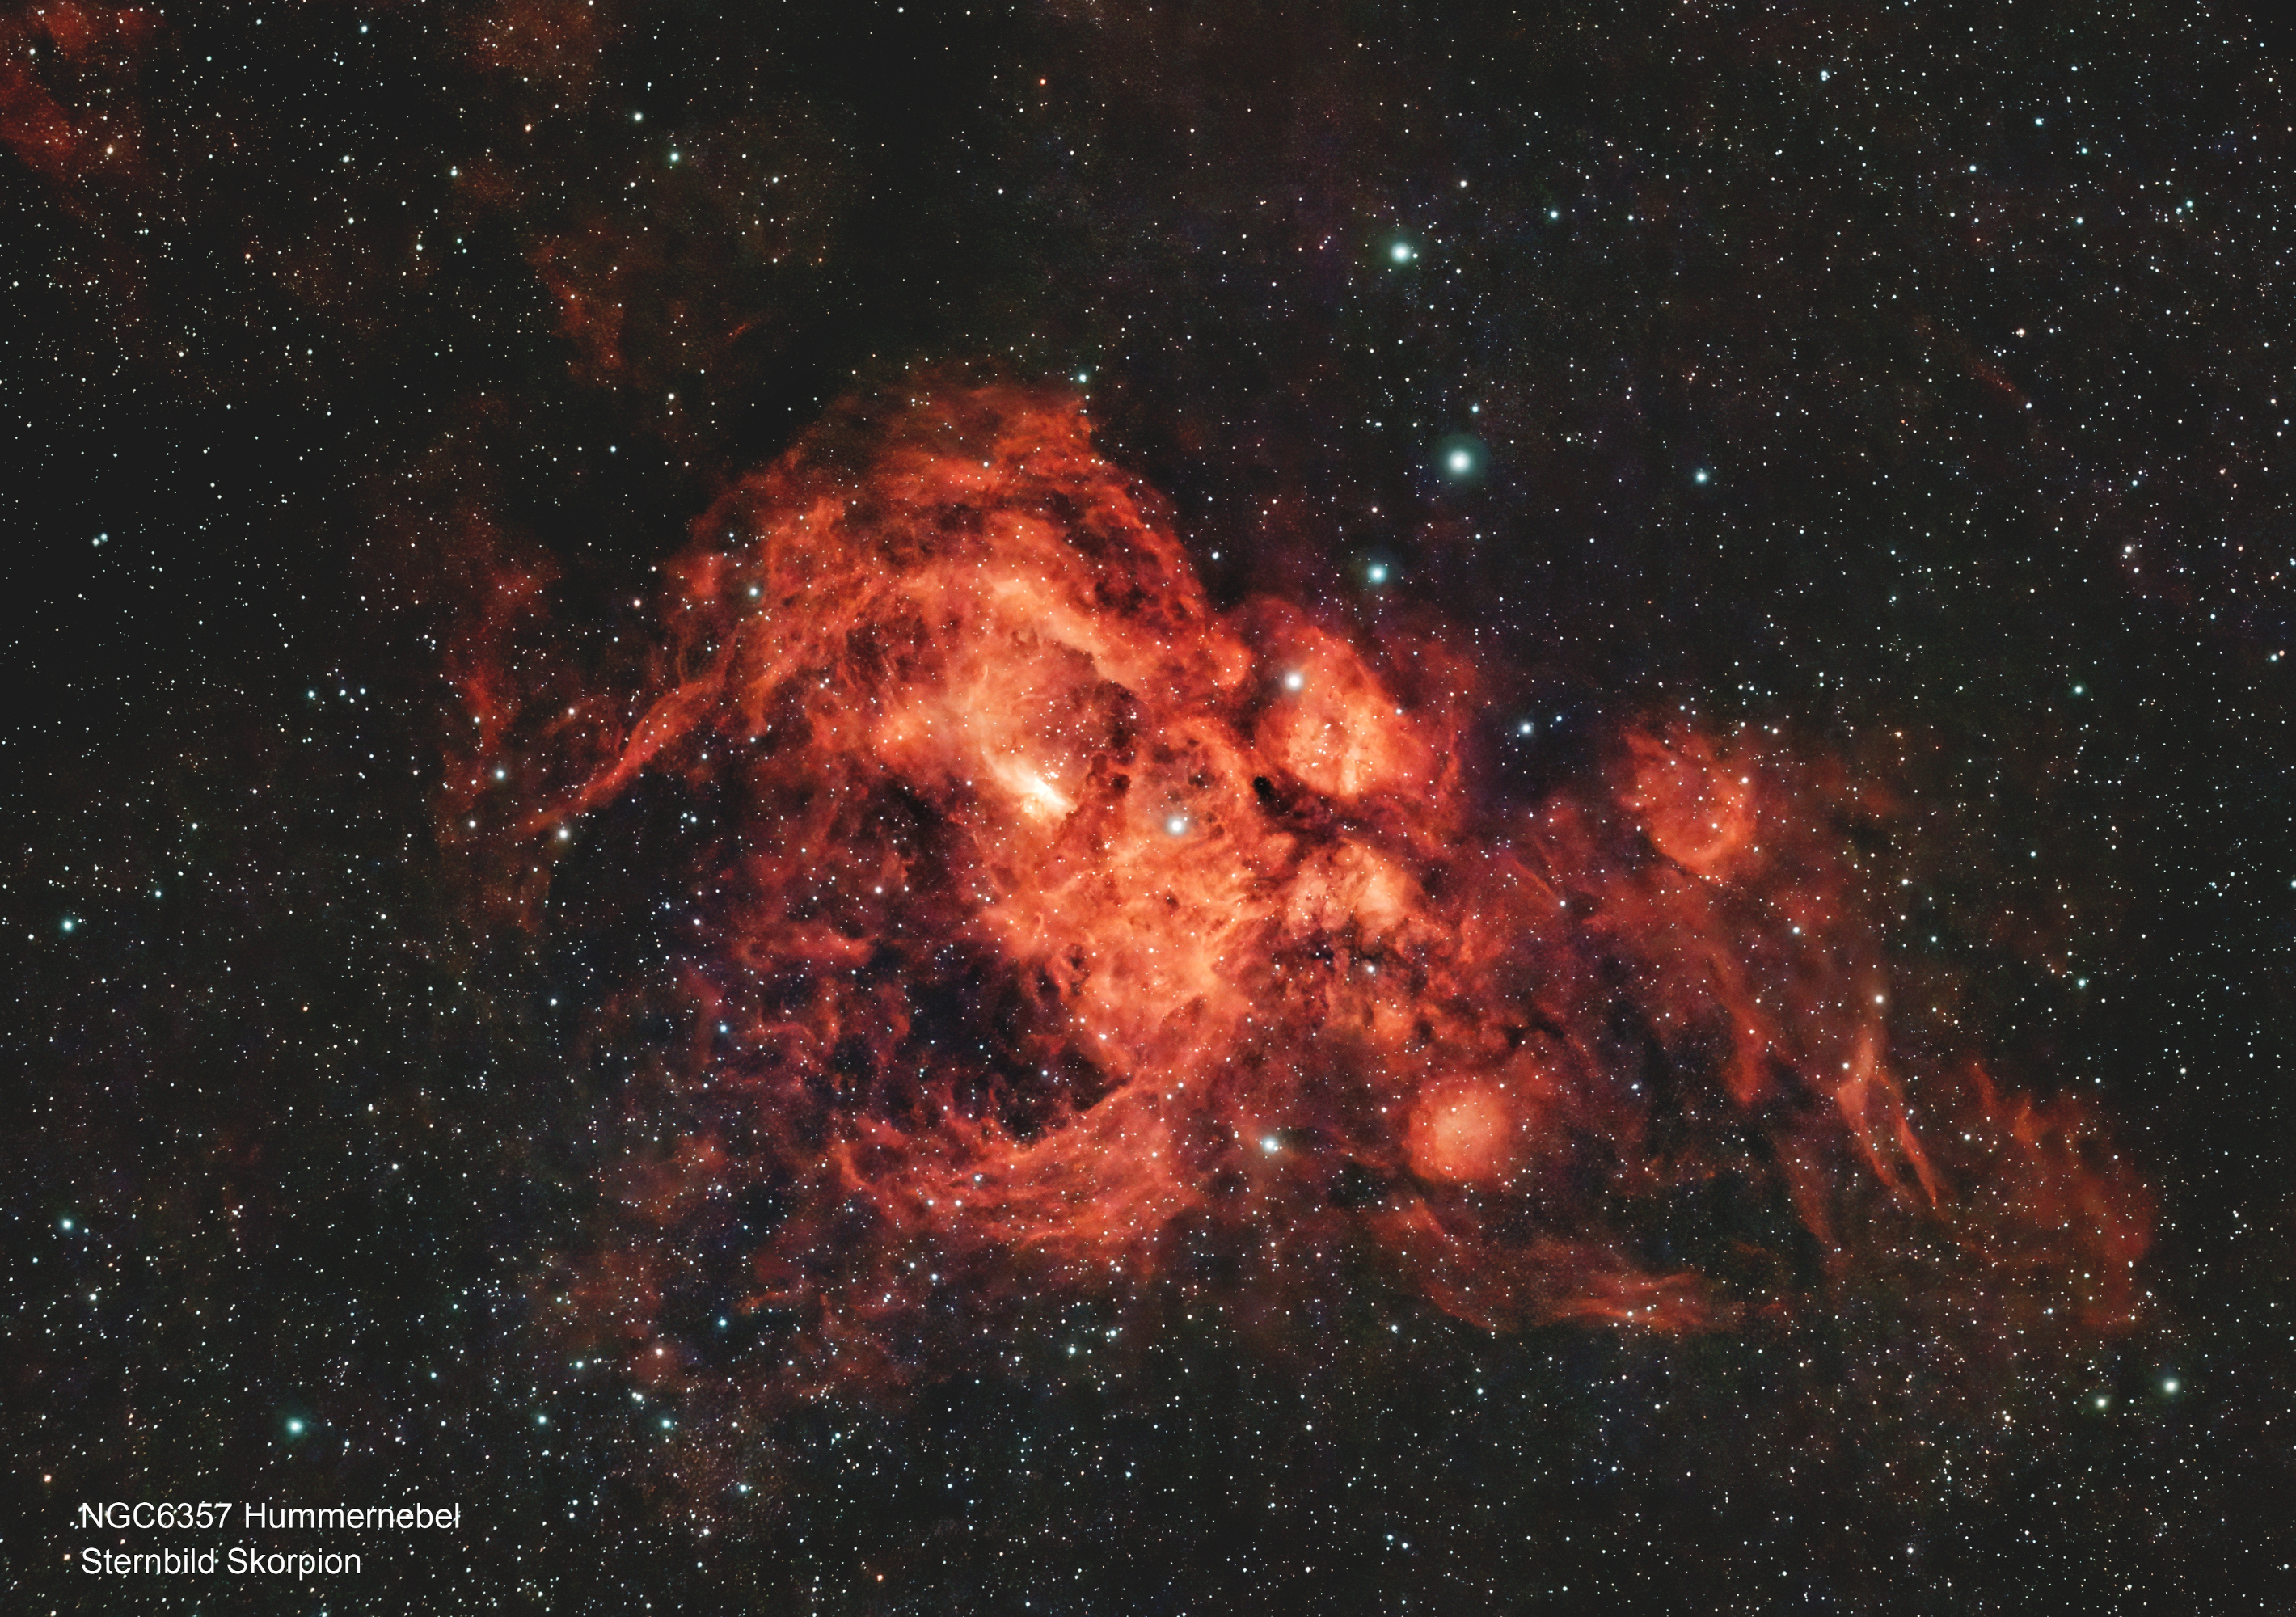 NGC6357 Hummernebel